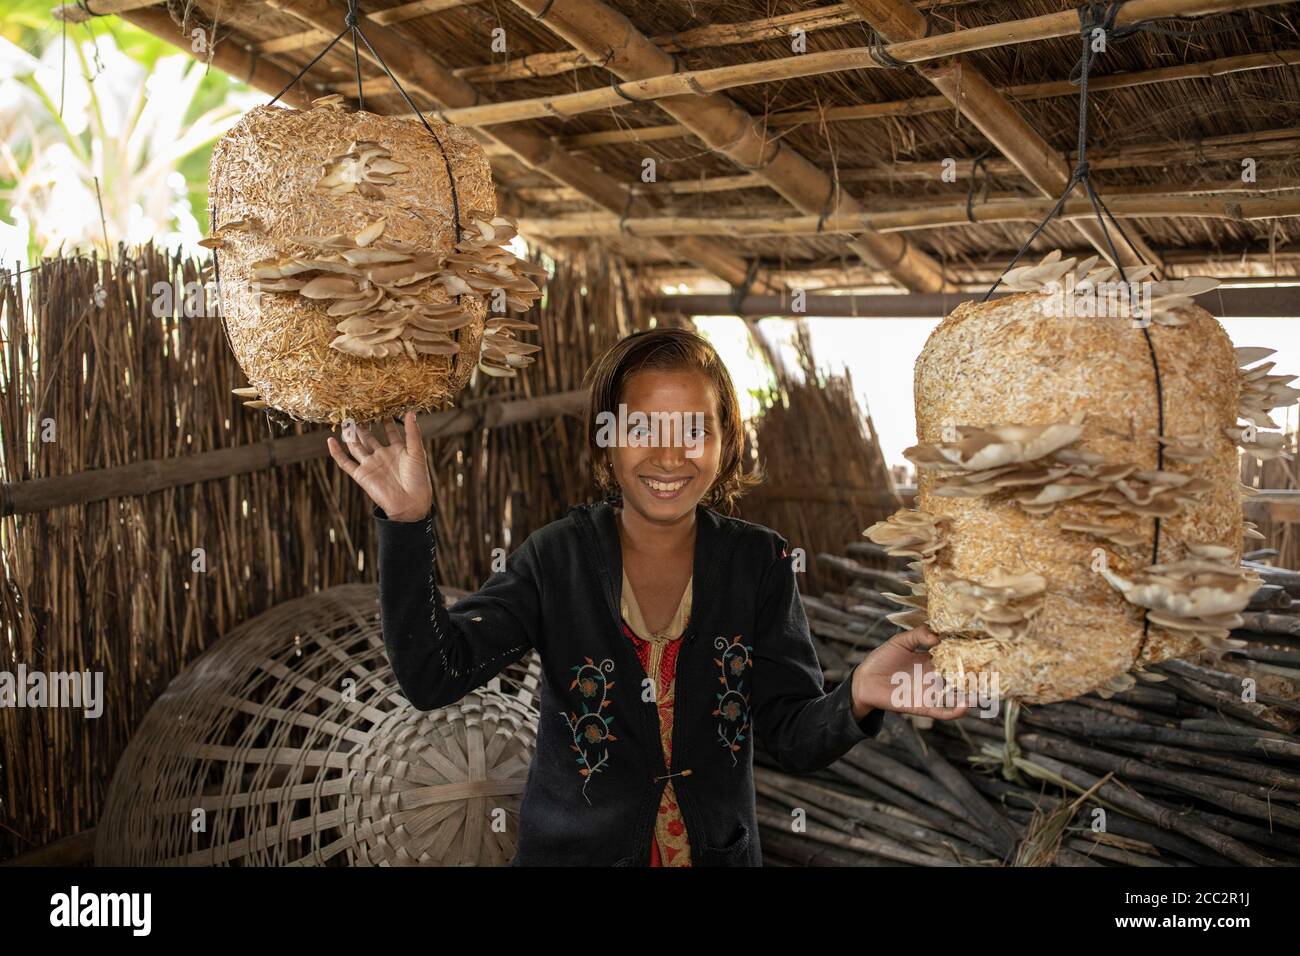 Una ragazza in Bihar, India, incline all'alluvione, coltiva i funghi appesi al soffitto della sua casa. Può trasportarli facilmente durante un periodo di alluvione, se necessario. Foto Stock